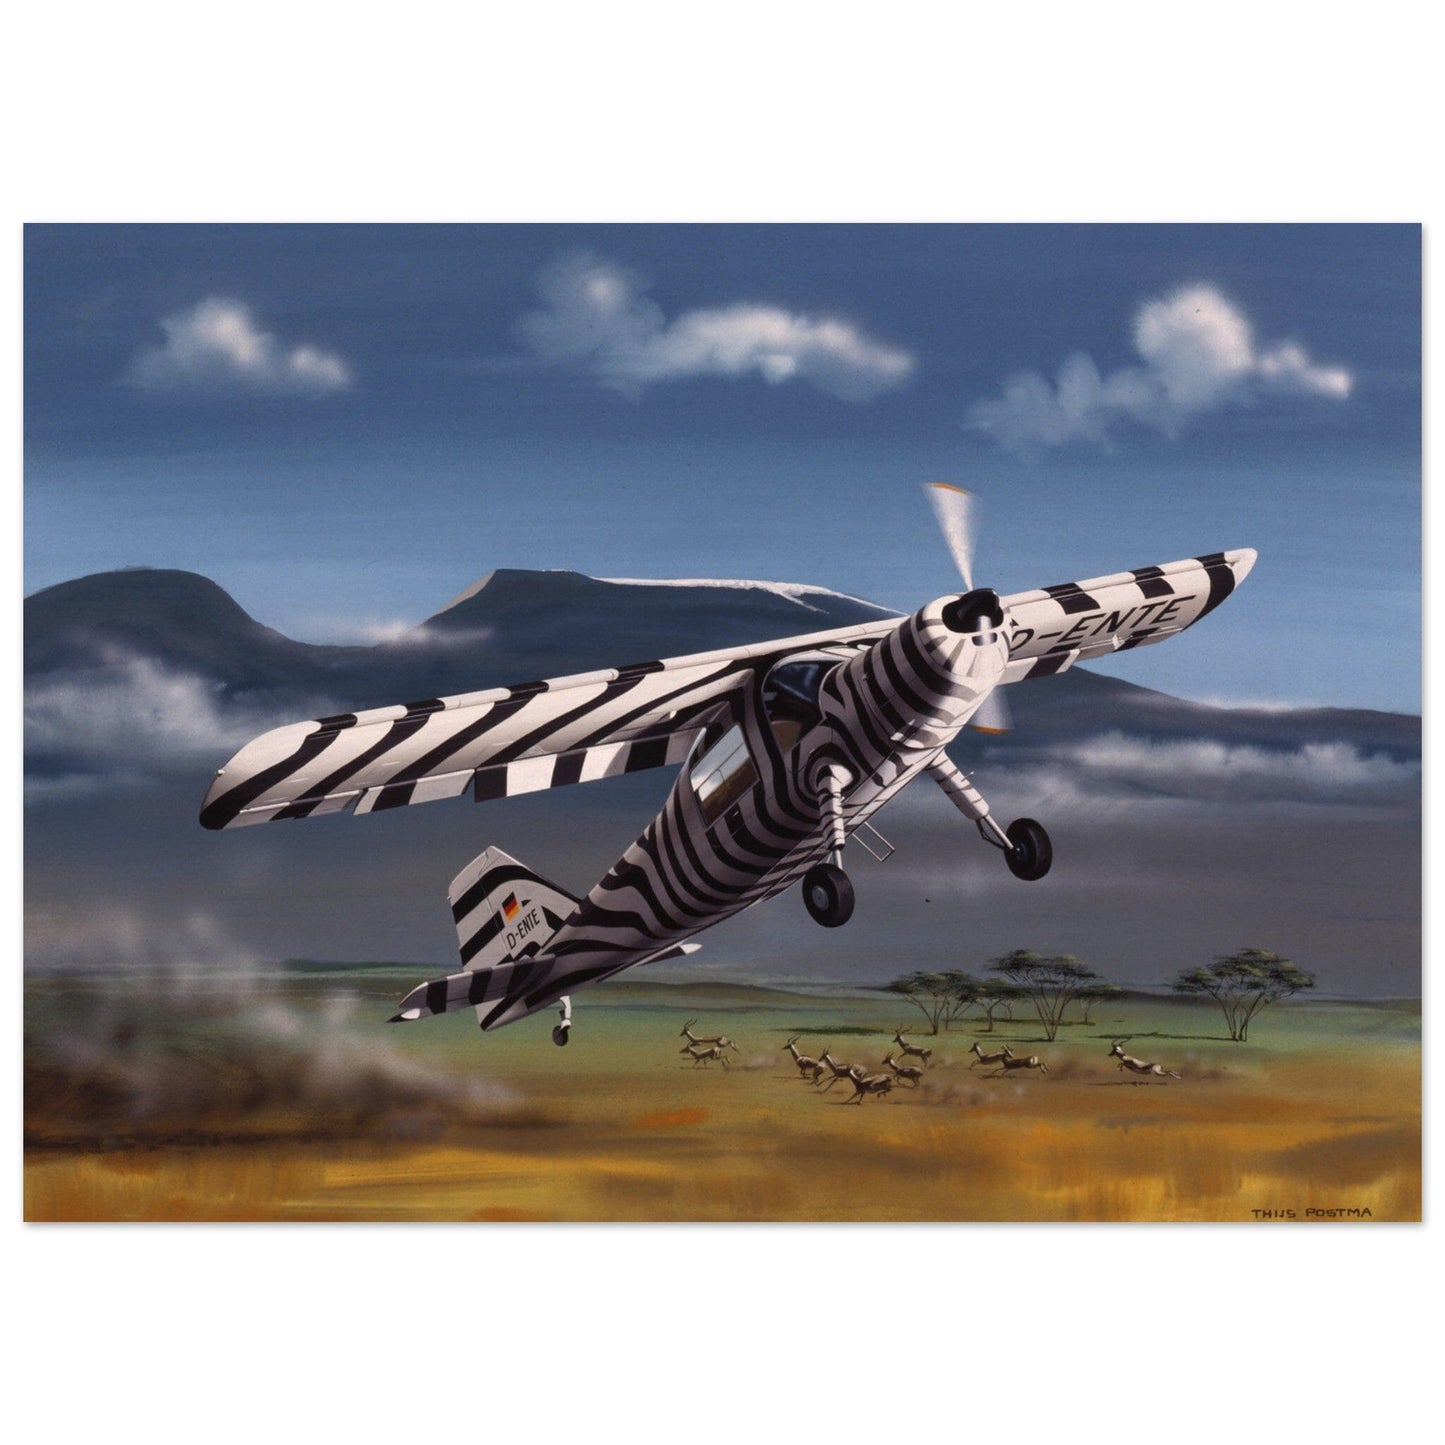 Thijs Postma - Poster - Dornier Do 27 Grzimek Serengeti Poster Only TP Aviation Art 50x70 cm / 20x28″ 